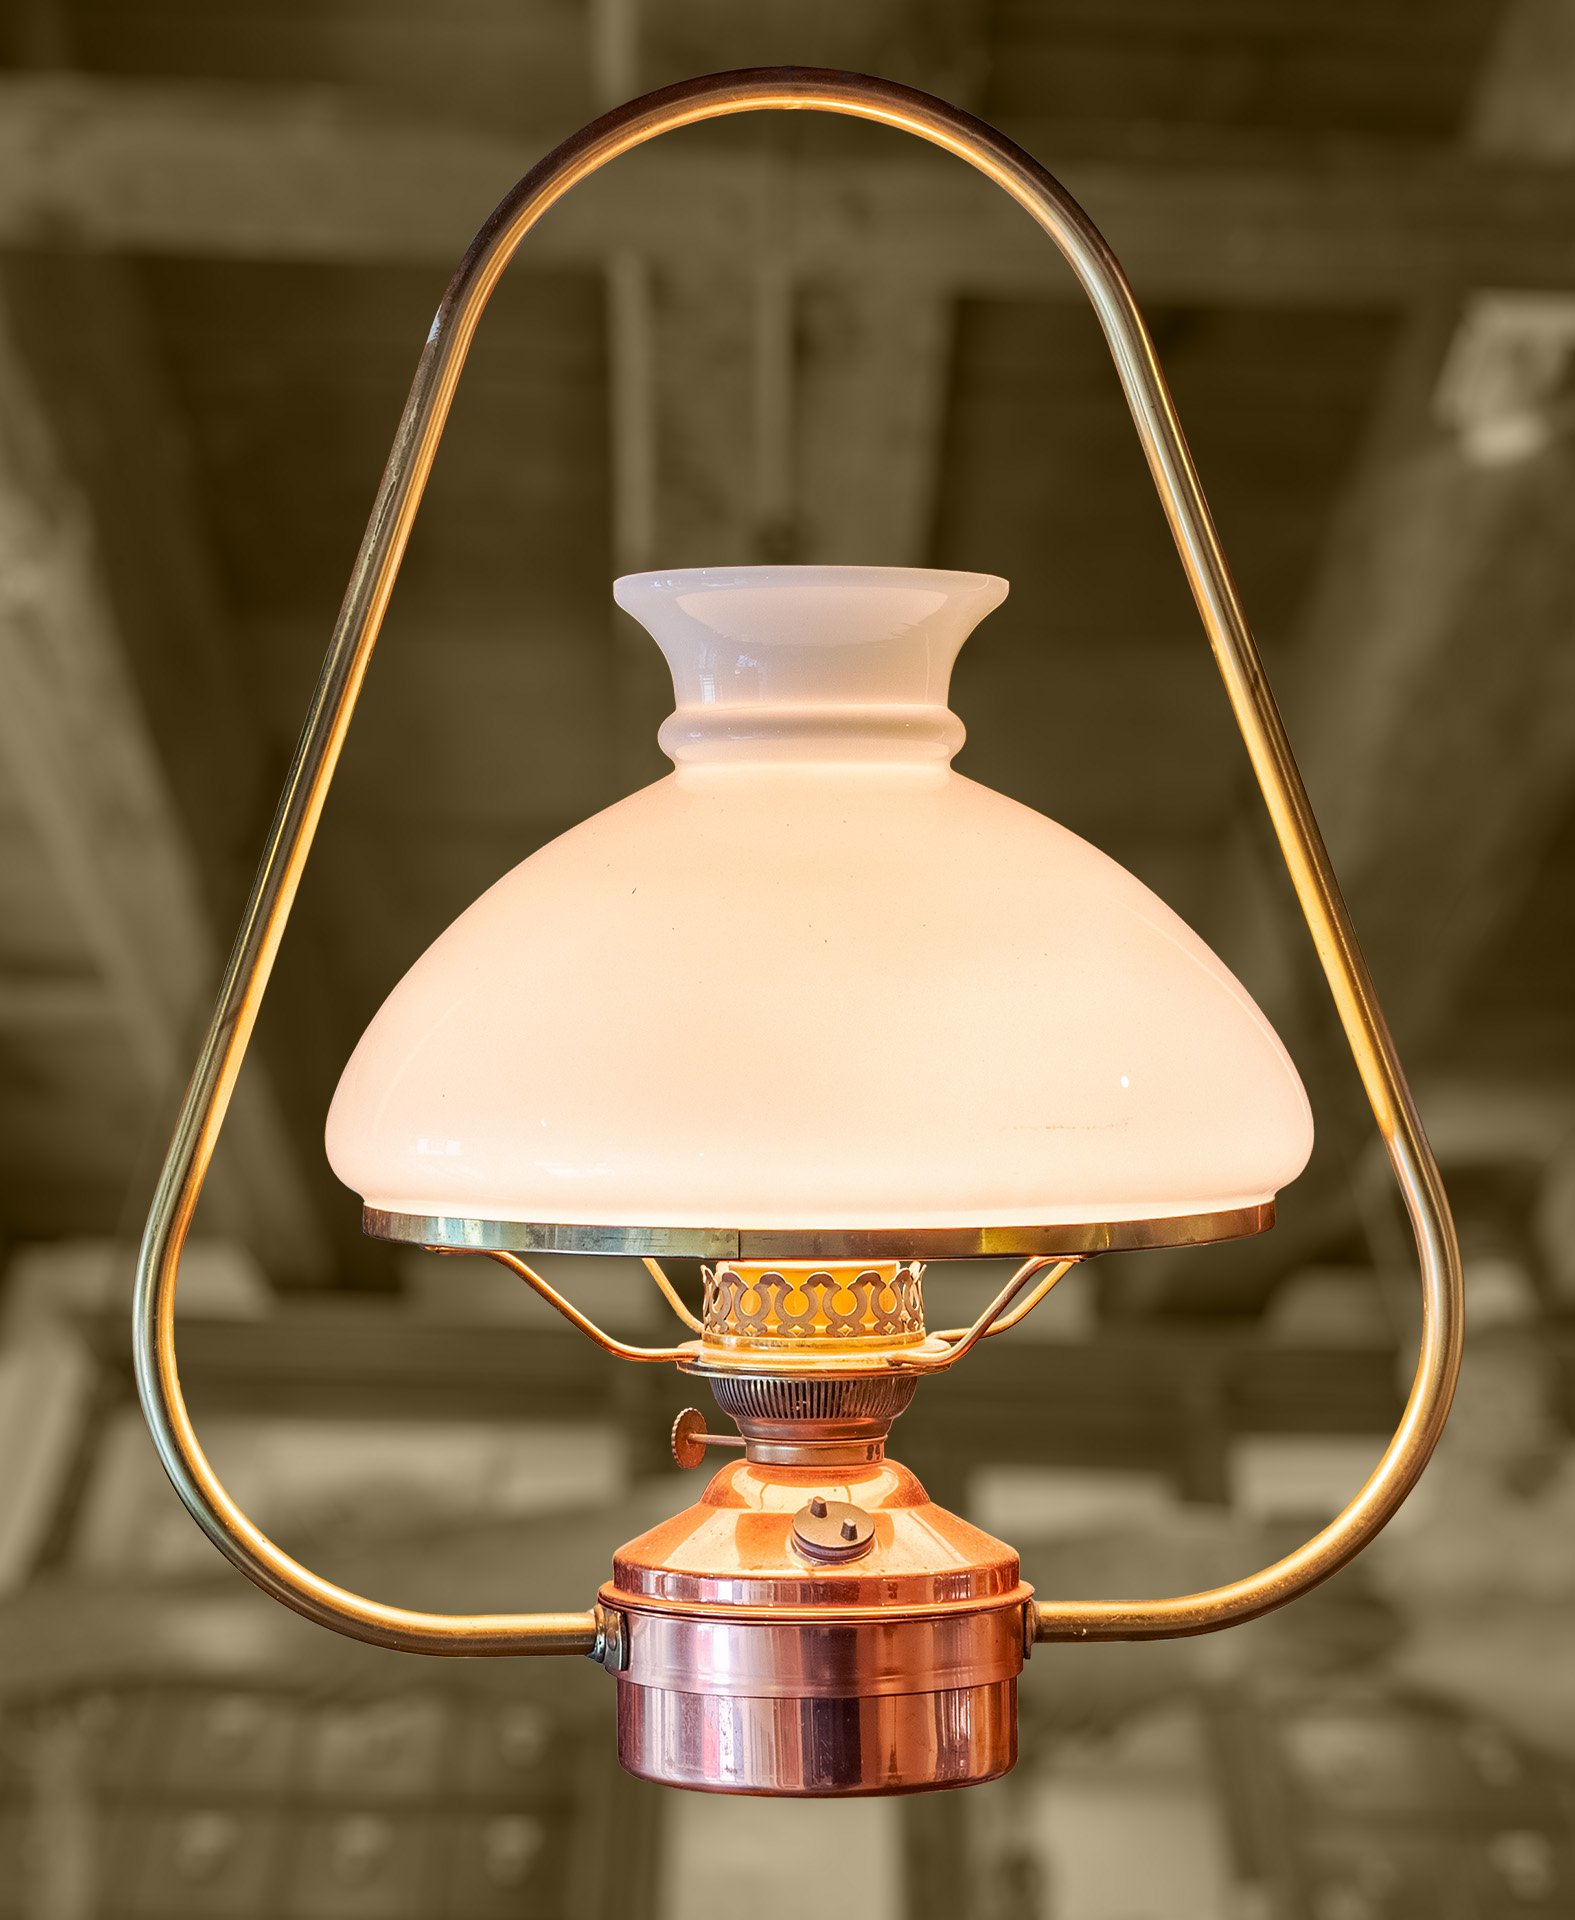 Petroleumlampe mit Messingbügel und Milchglashaube (Schiffahrtsmuseum Unterweser CC BY-NC-SA)